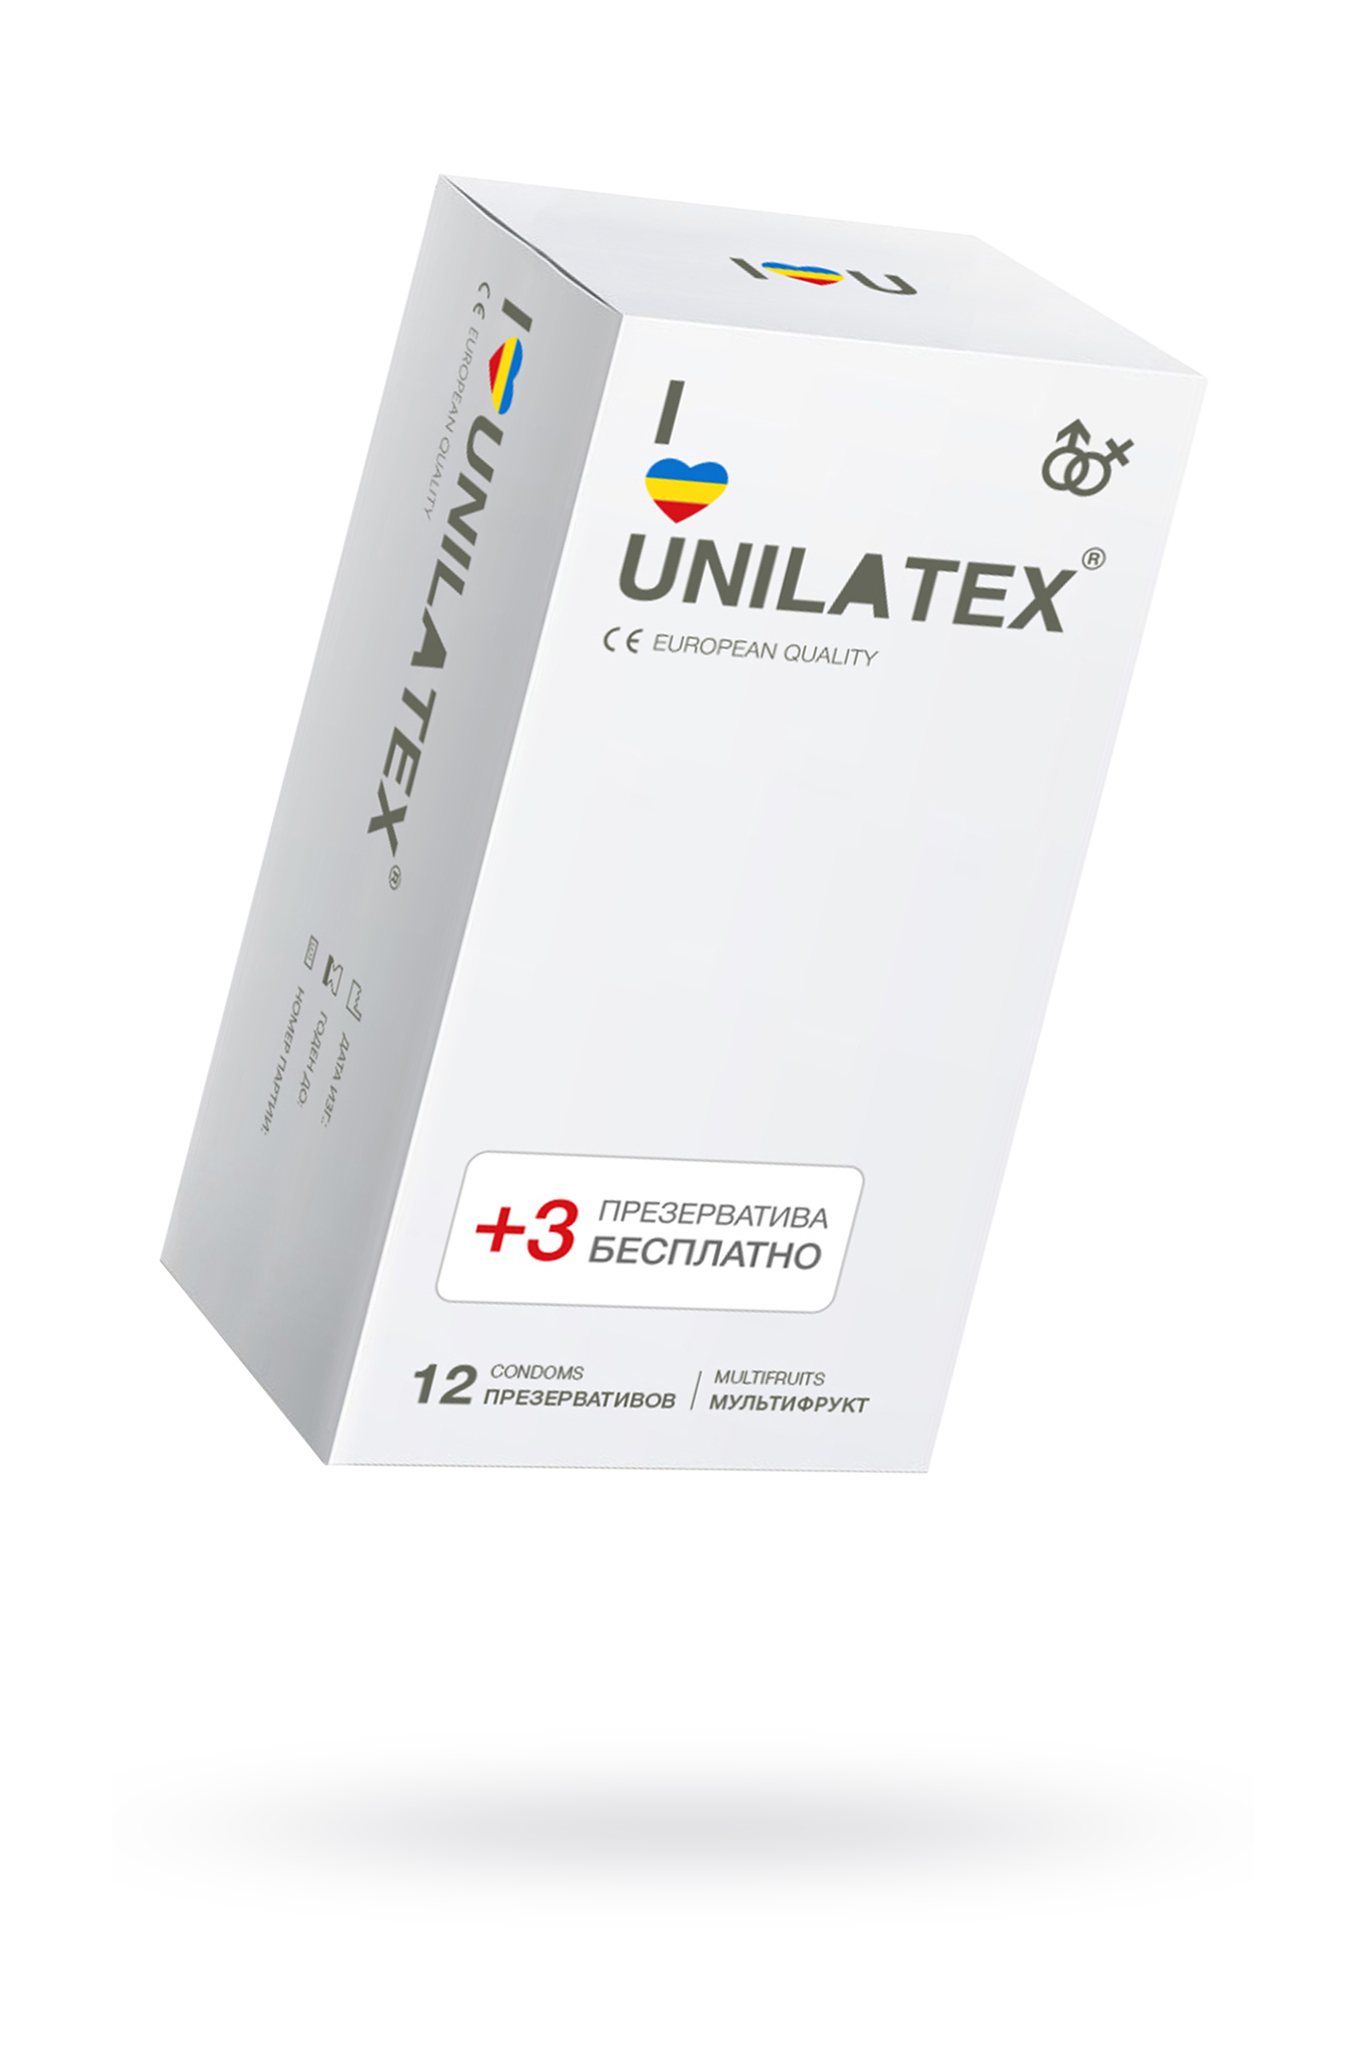 Презервативы Unilatex, multifrutis, аромат, цветные, 19 см, 5,4 см, 15 шт. фото